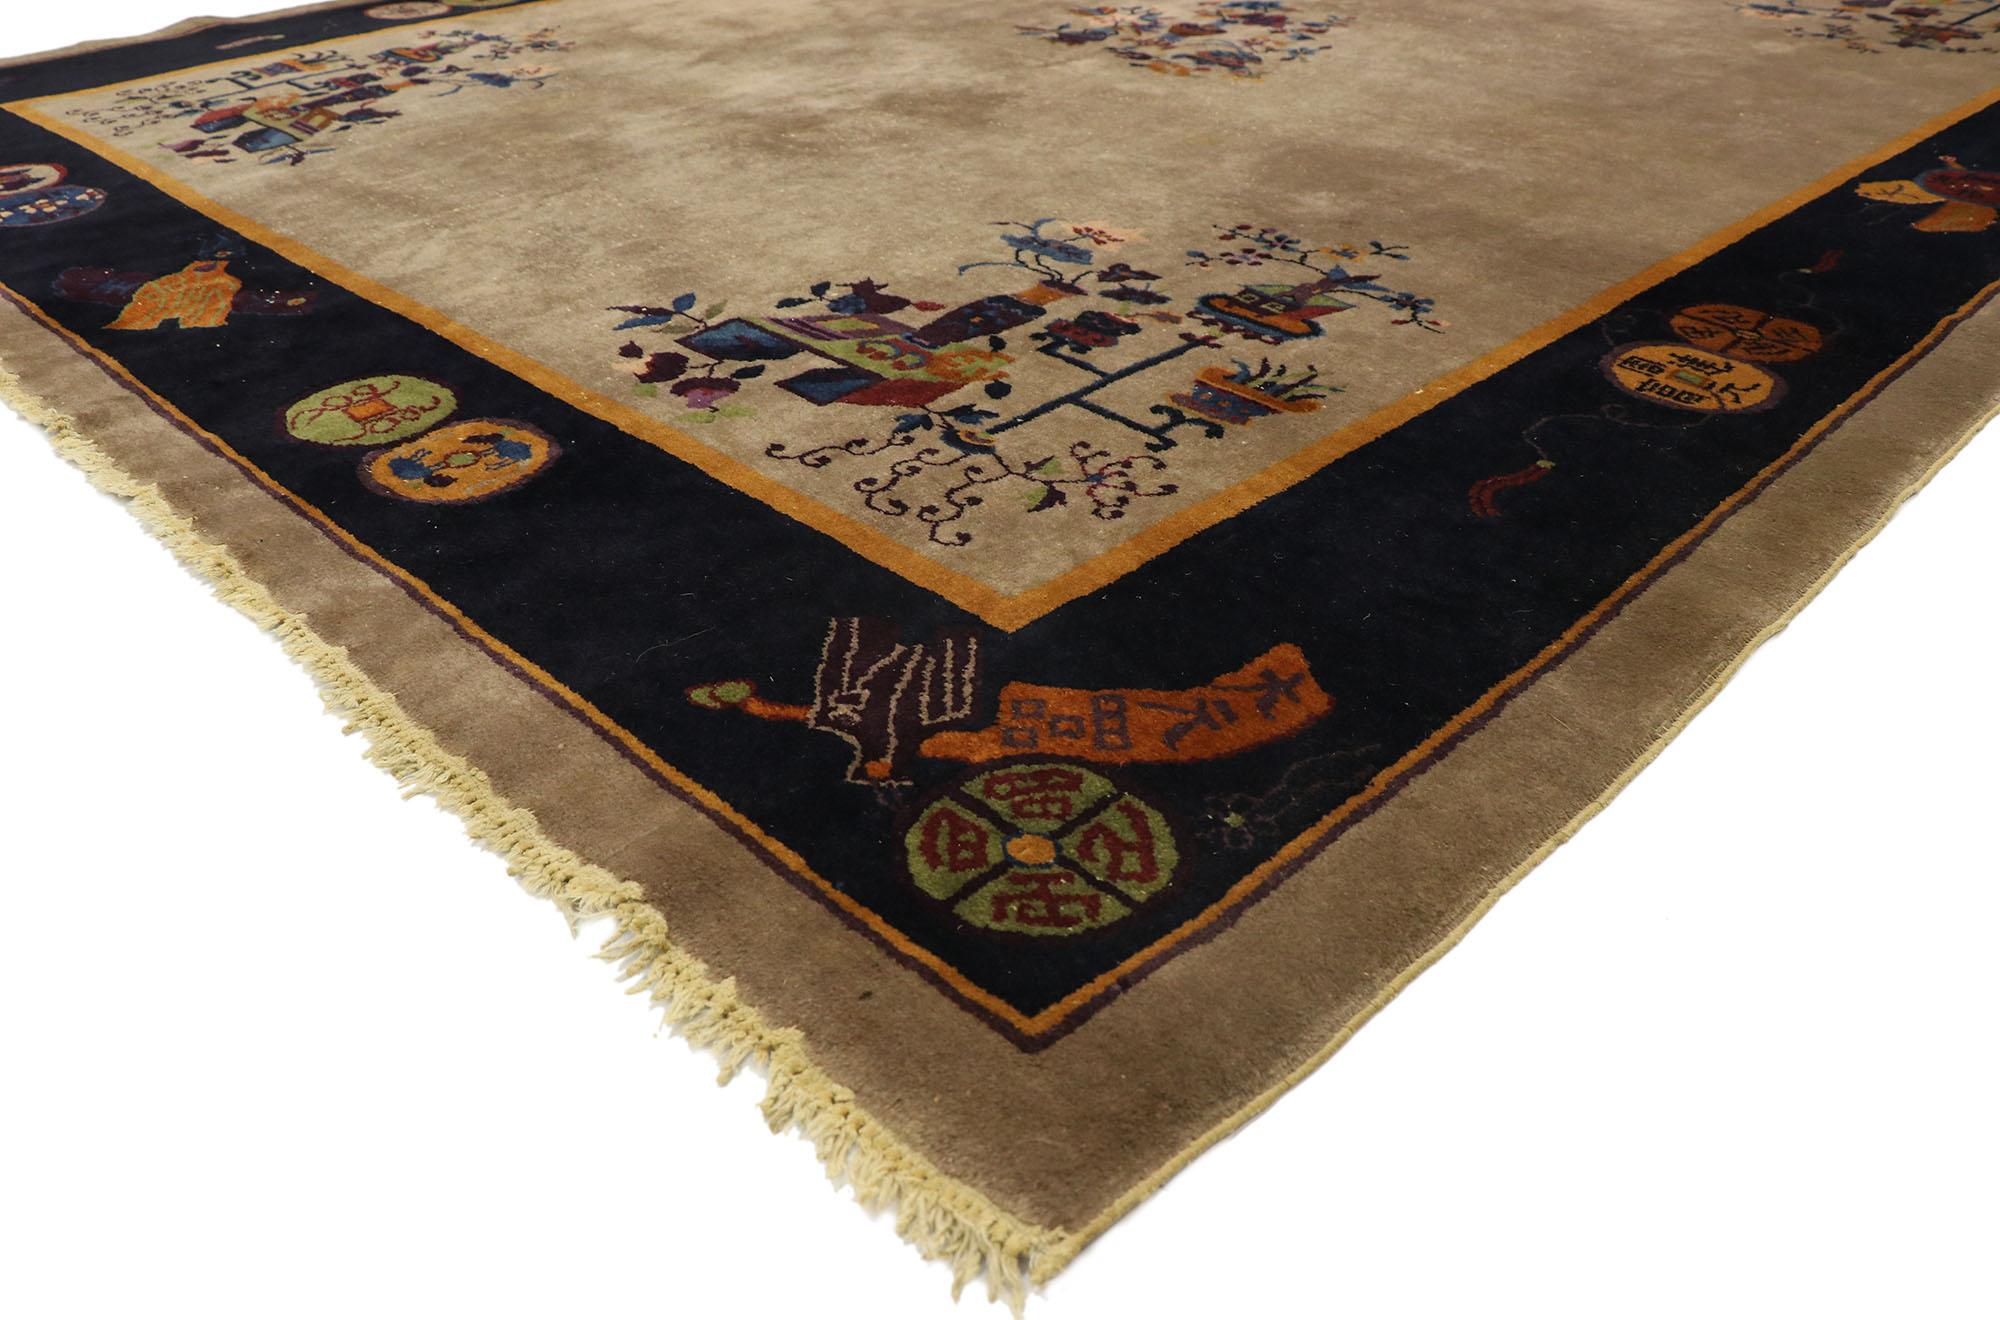 77407, strapazierter antiker chinesischer Peking-Teppich im traditionellen Chinoiserie-Stil 08'10 x 11'06. Dieser antike chinesische Peking-Teppich aus handgeknüpfter Wolle zeigt eine Gruppe blühender Cloisonné-Vasen in jeder Eckzwickel. In der